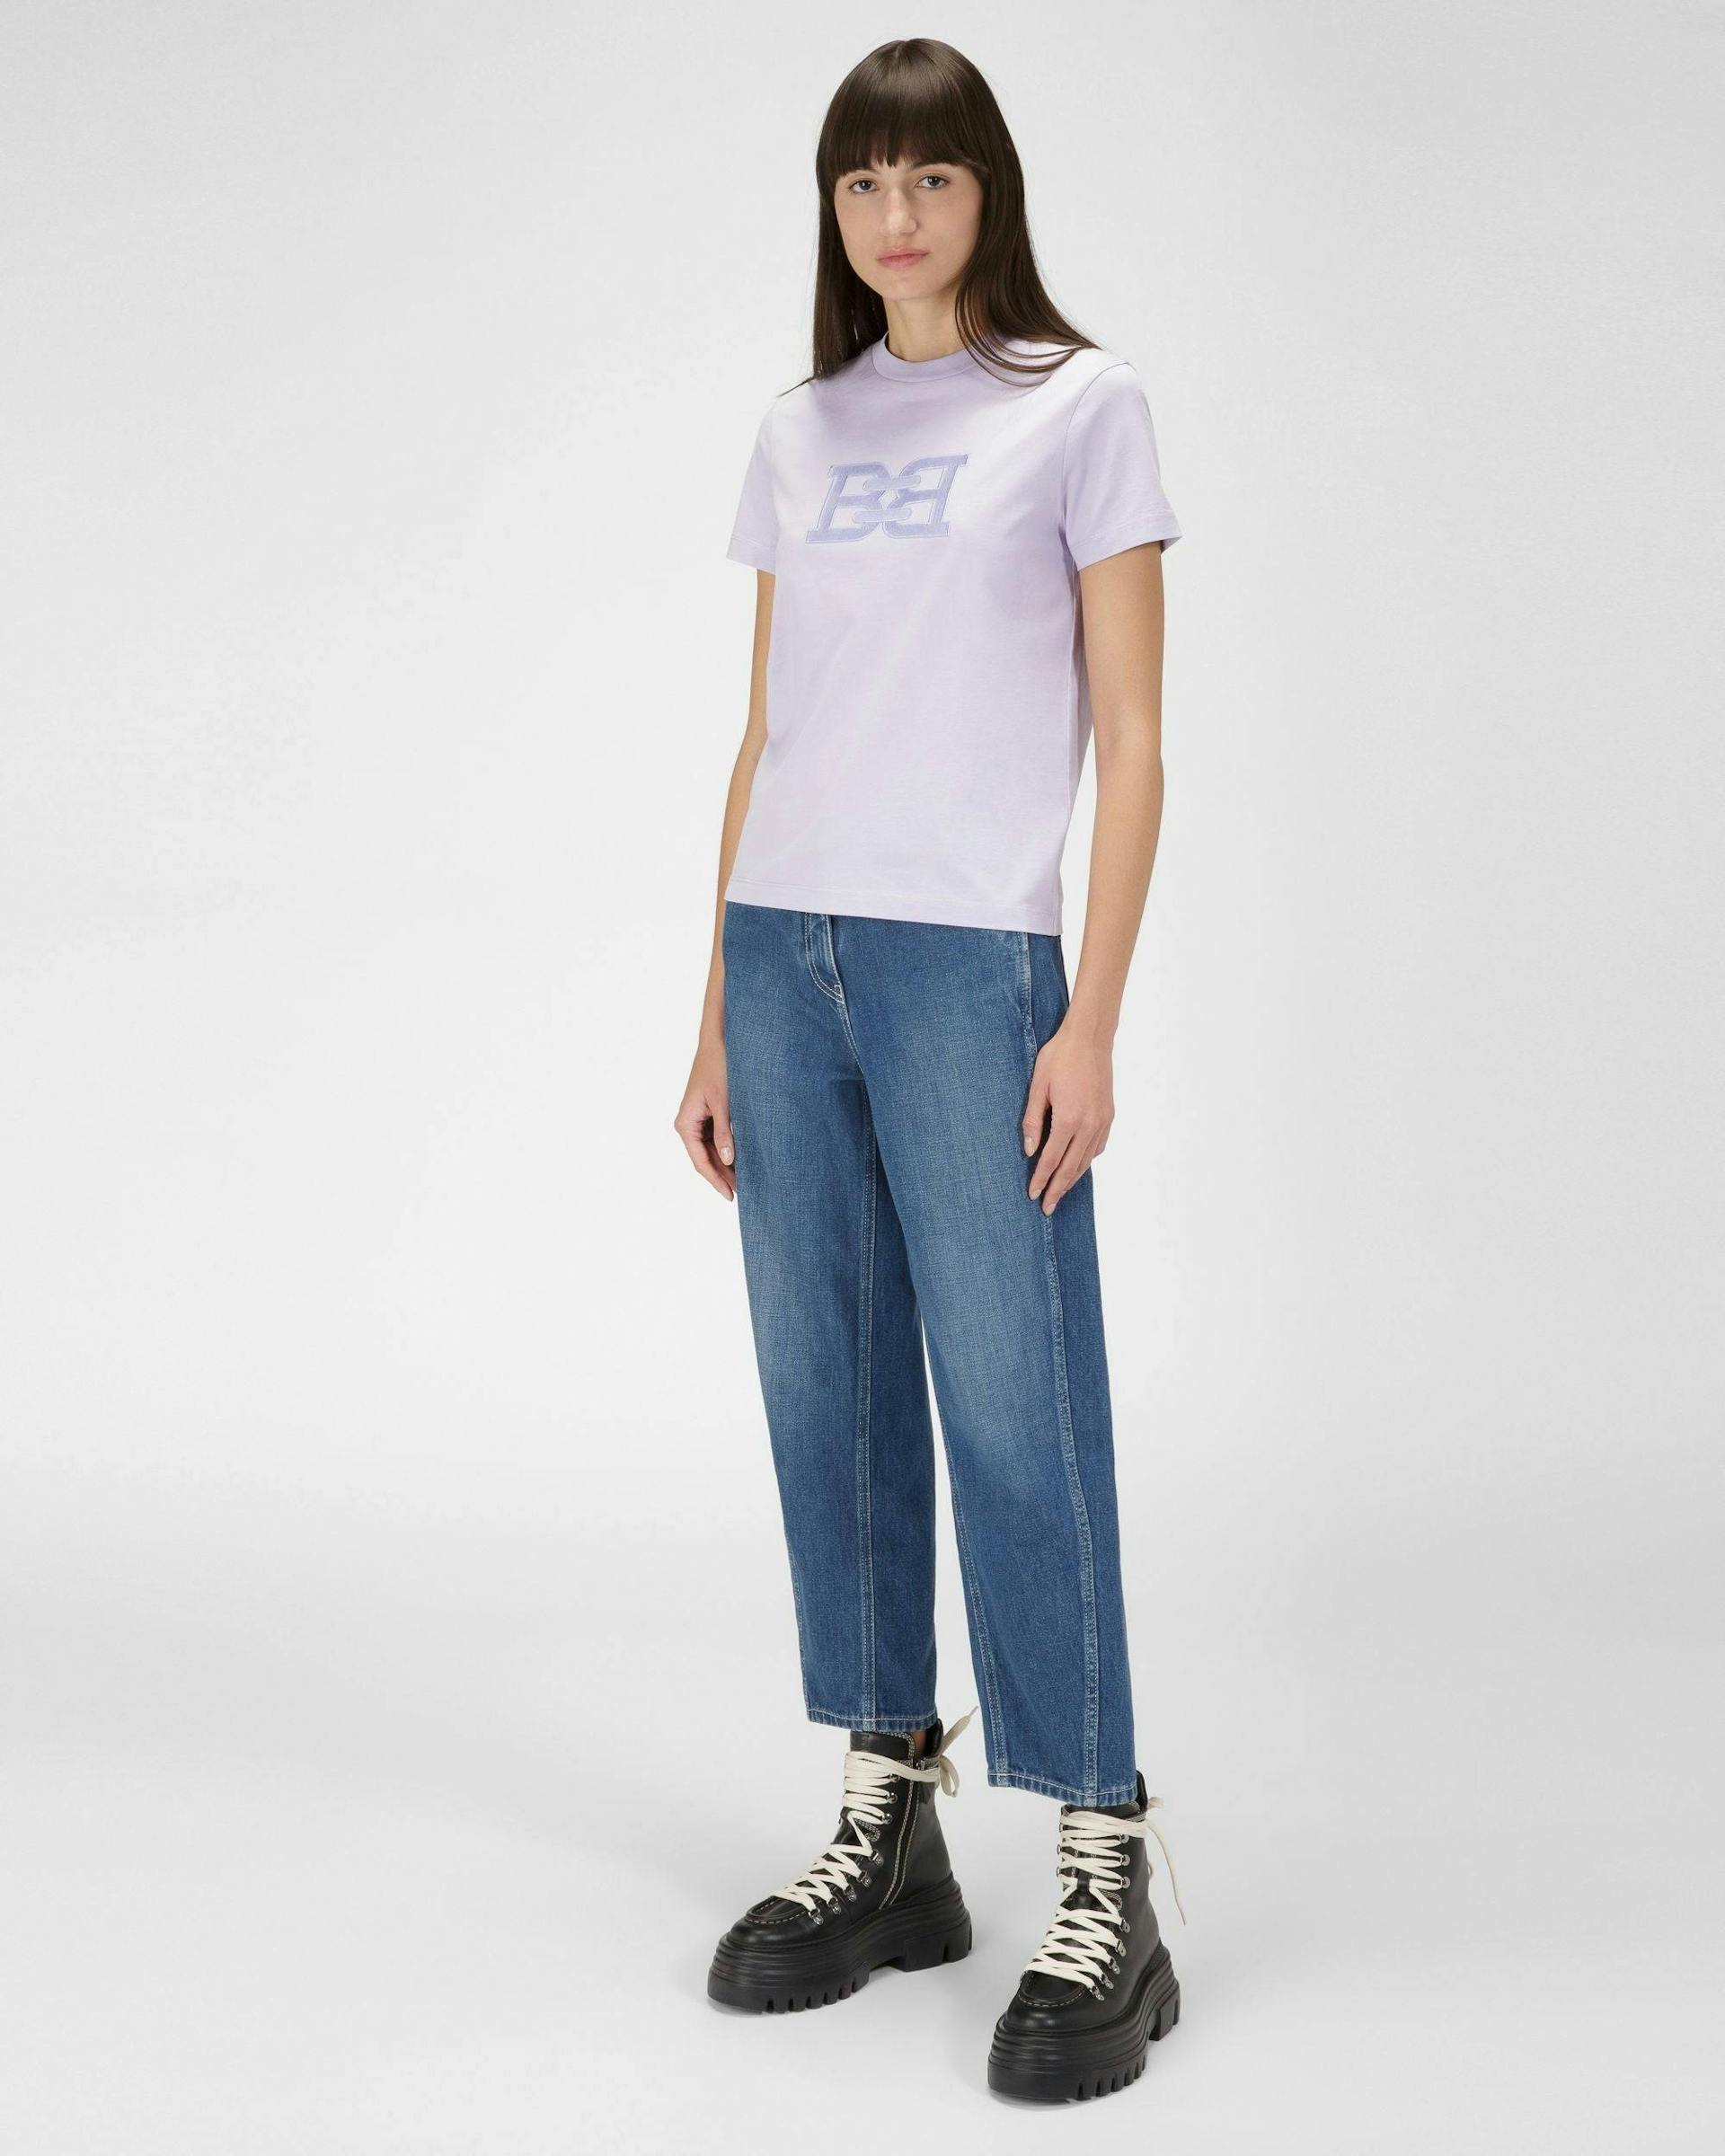 Organic Cotton T-Shirt In Lilac - Women's - Bally - 05